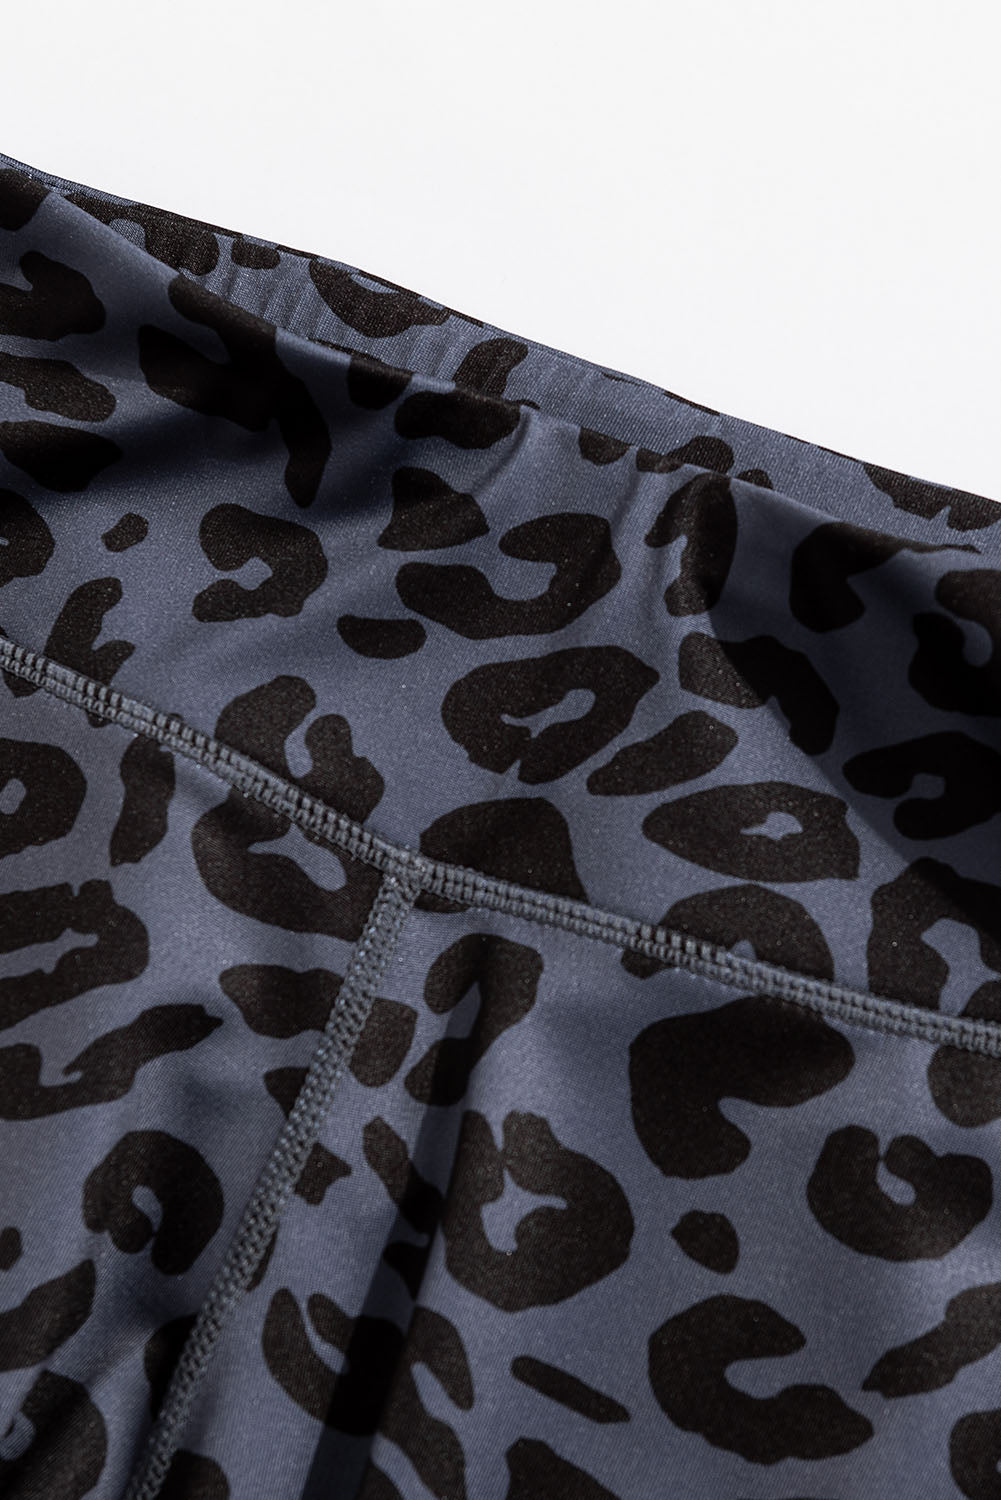 new look black grey leopard print sports bra medium